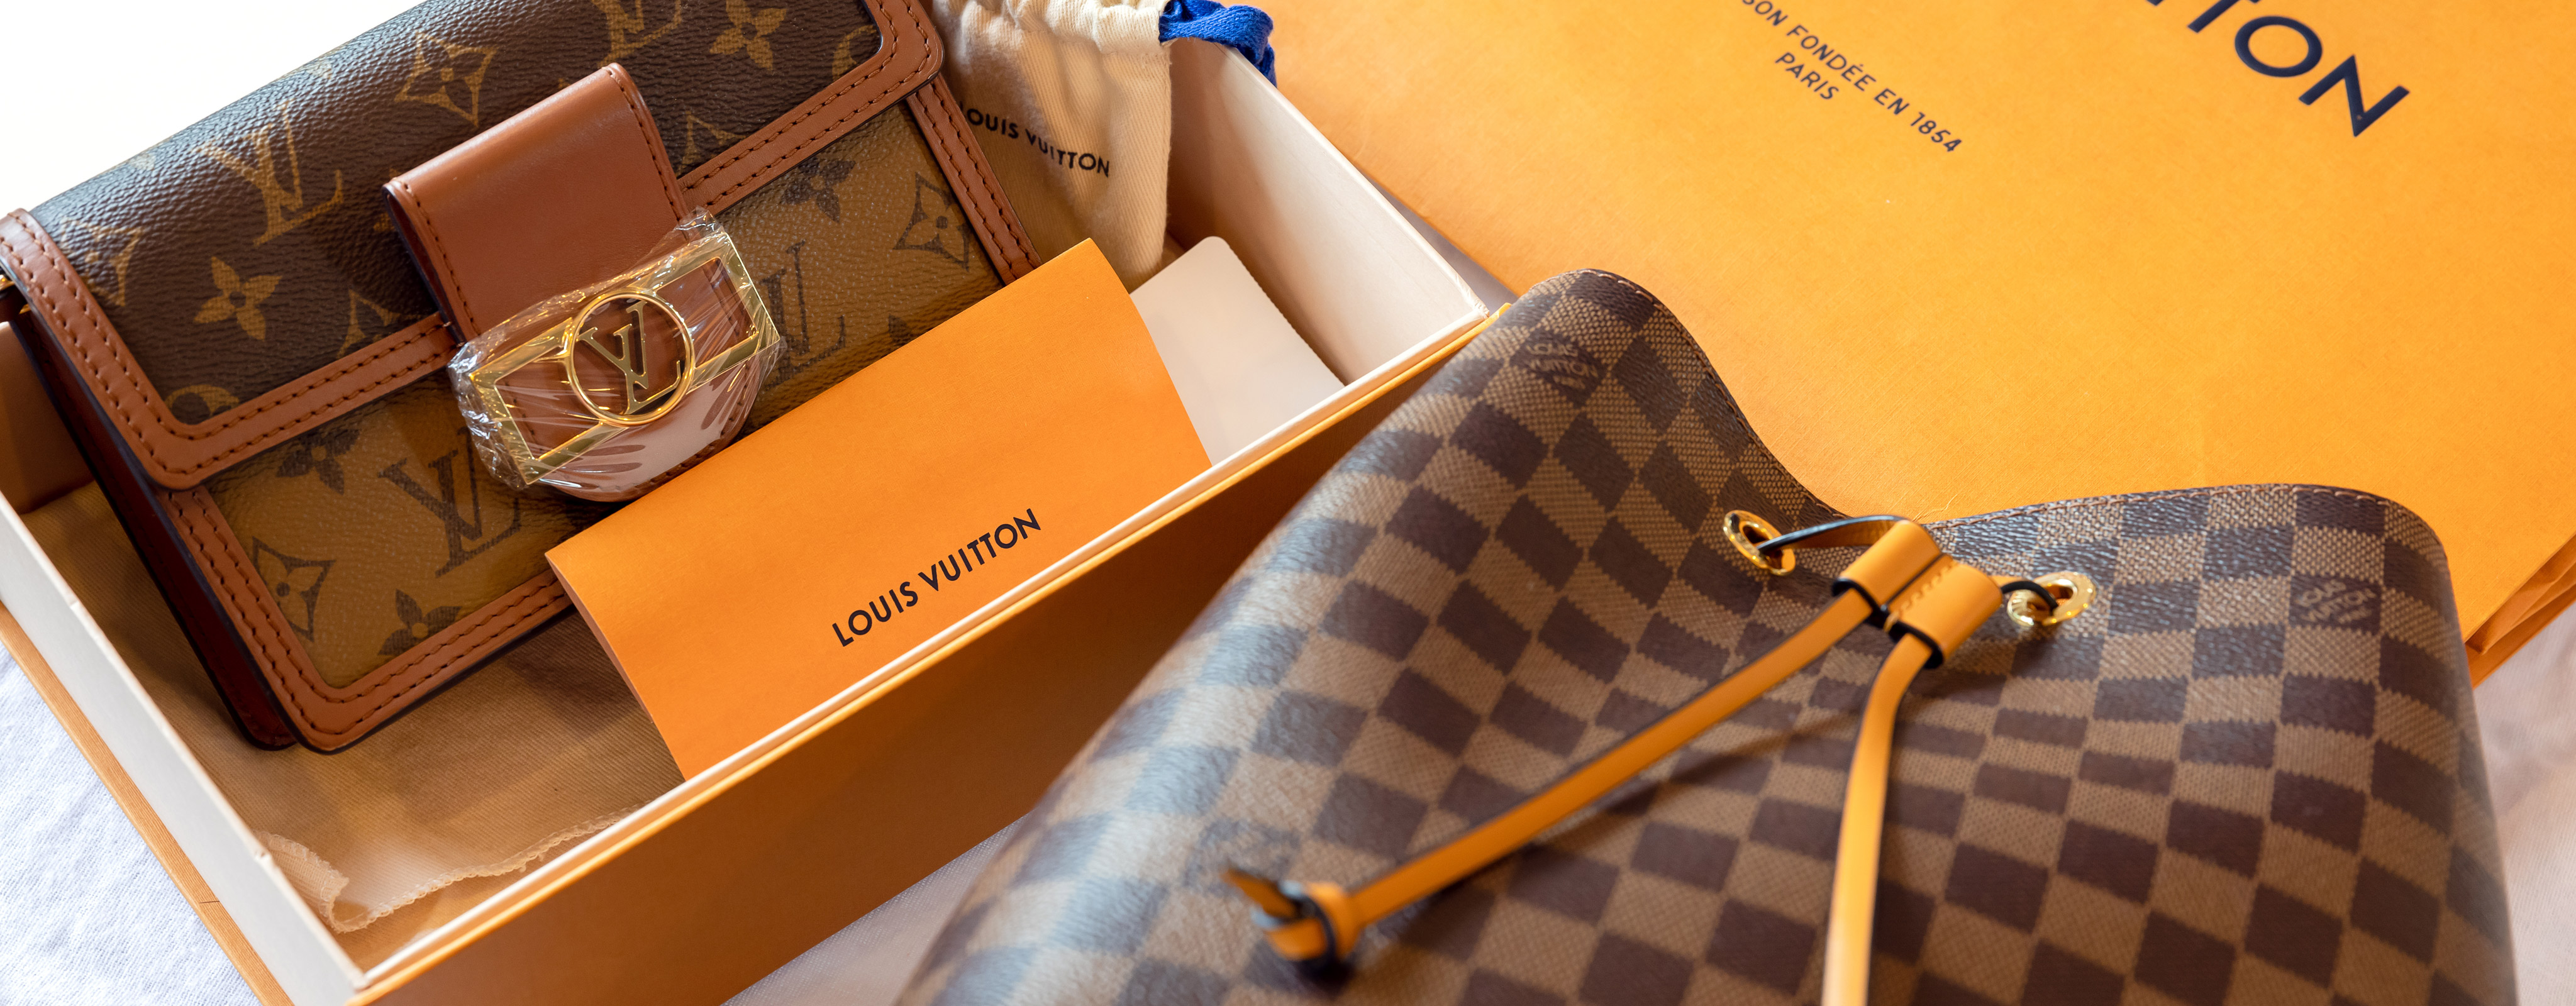 Louis Vuitton Ipad pouch Unbox 